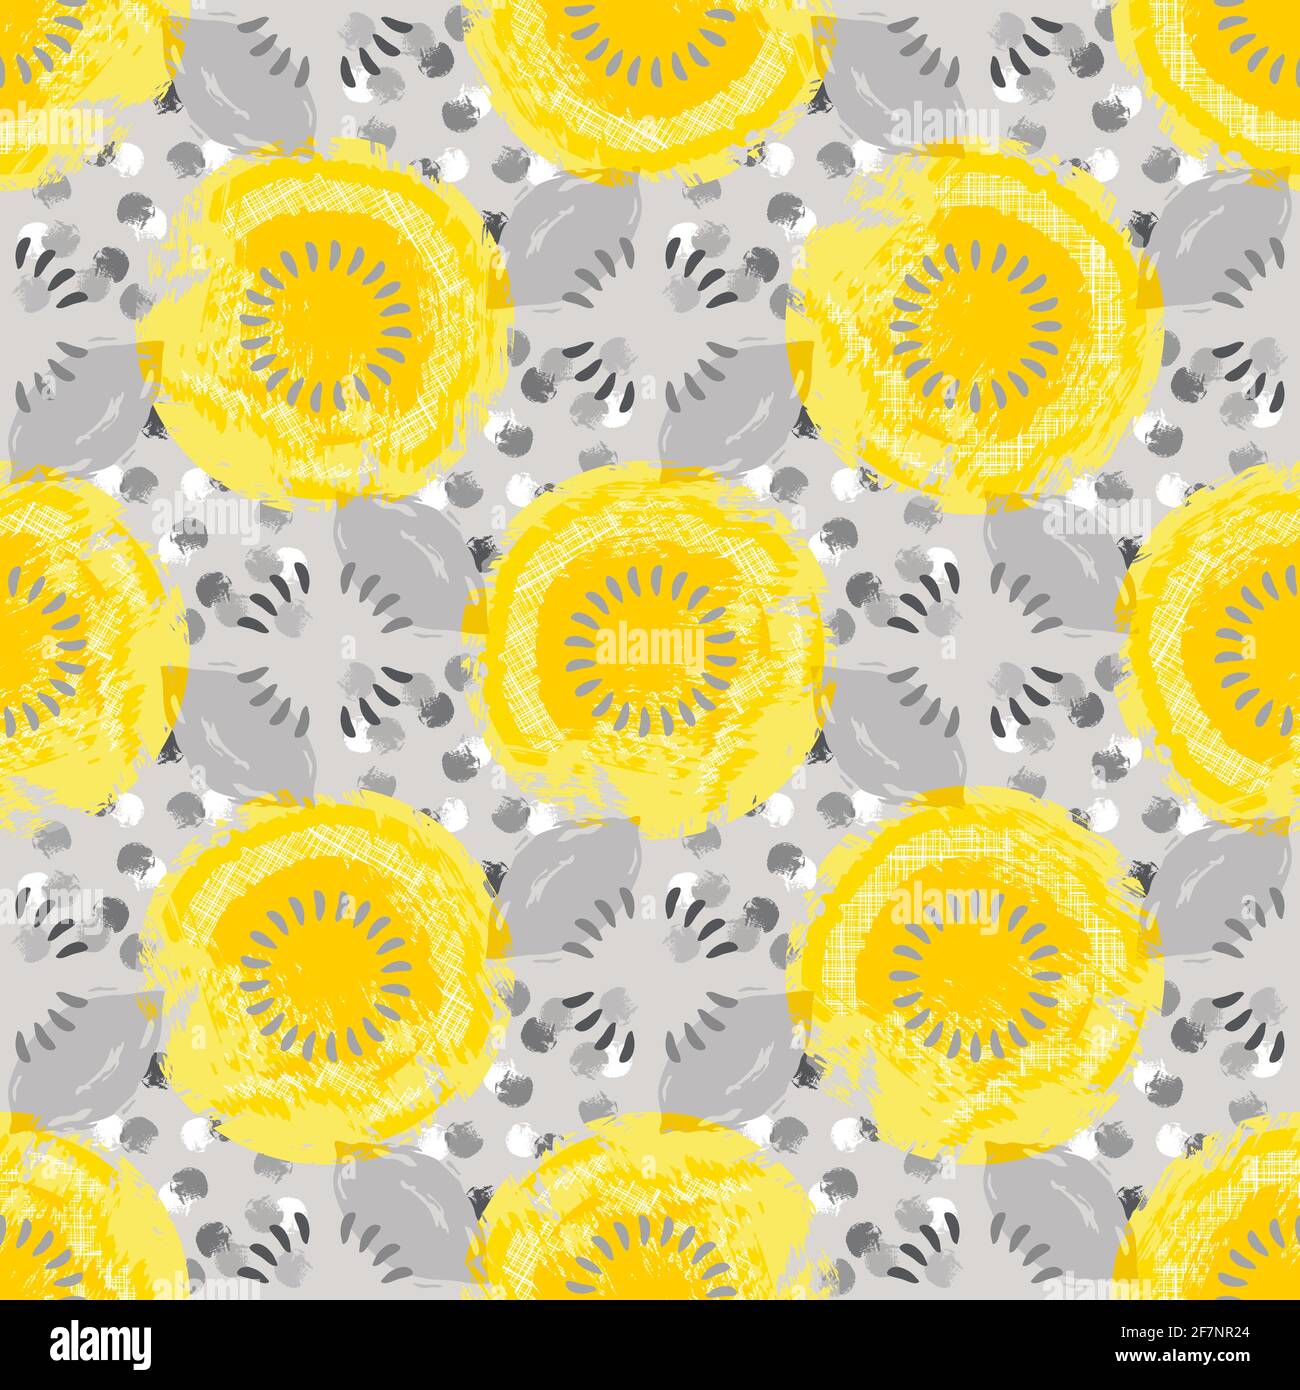 Nuances de jaune et de gris cercles, points, formes abstraites avec texture blanche. La combinaison de couleurs réchauffante est ensoleillée et amicale. Pour une utilisation sur le Web/l'impression Illustration de Vecteur